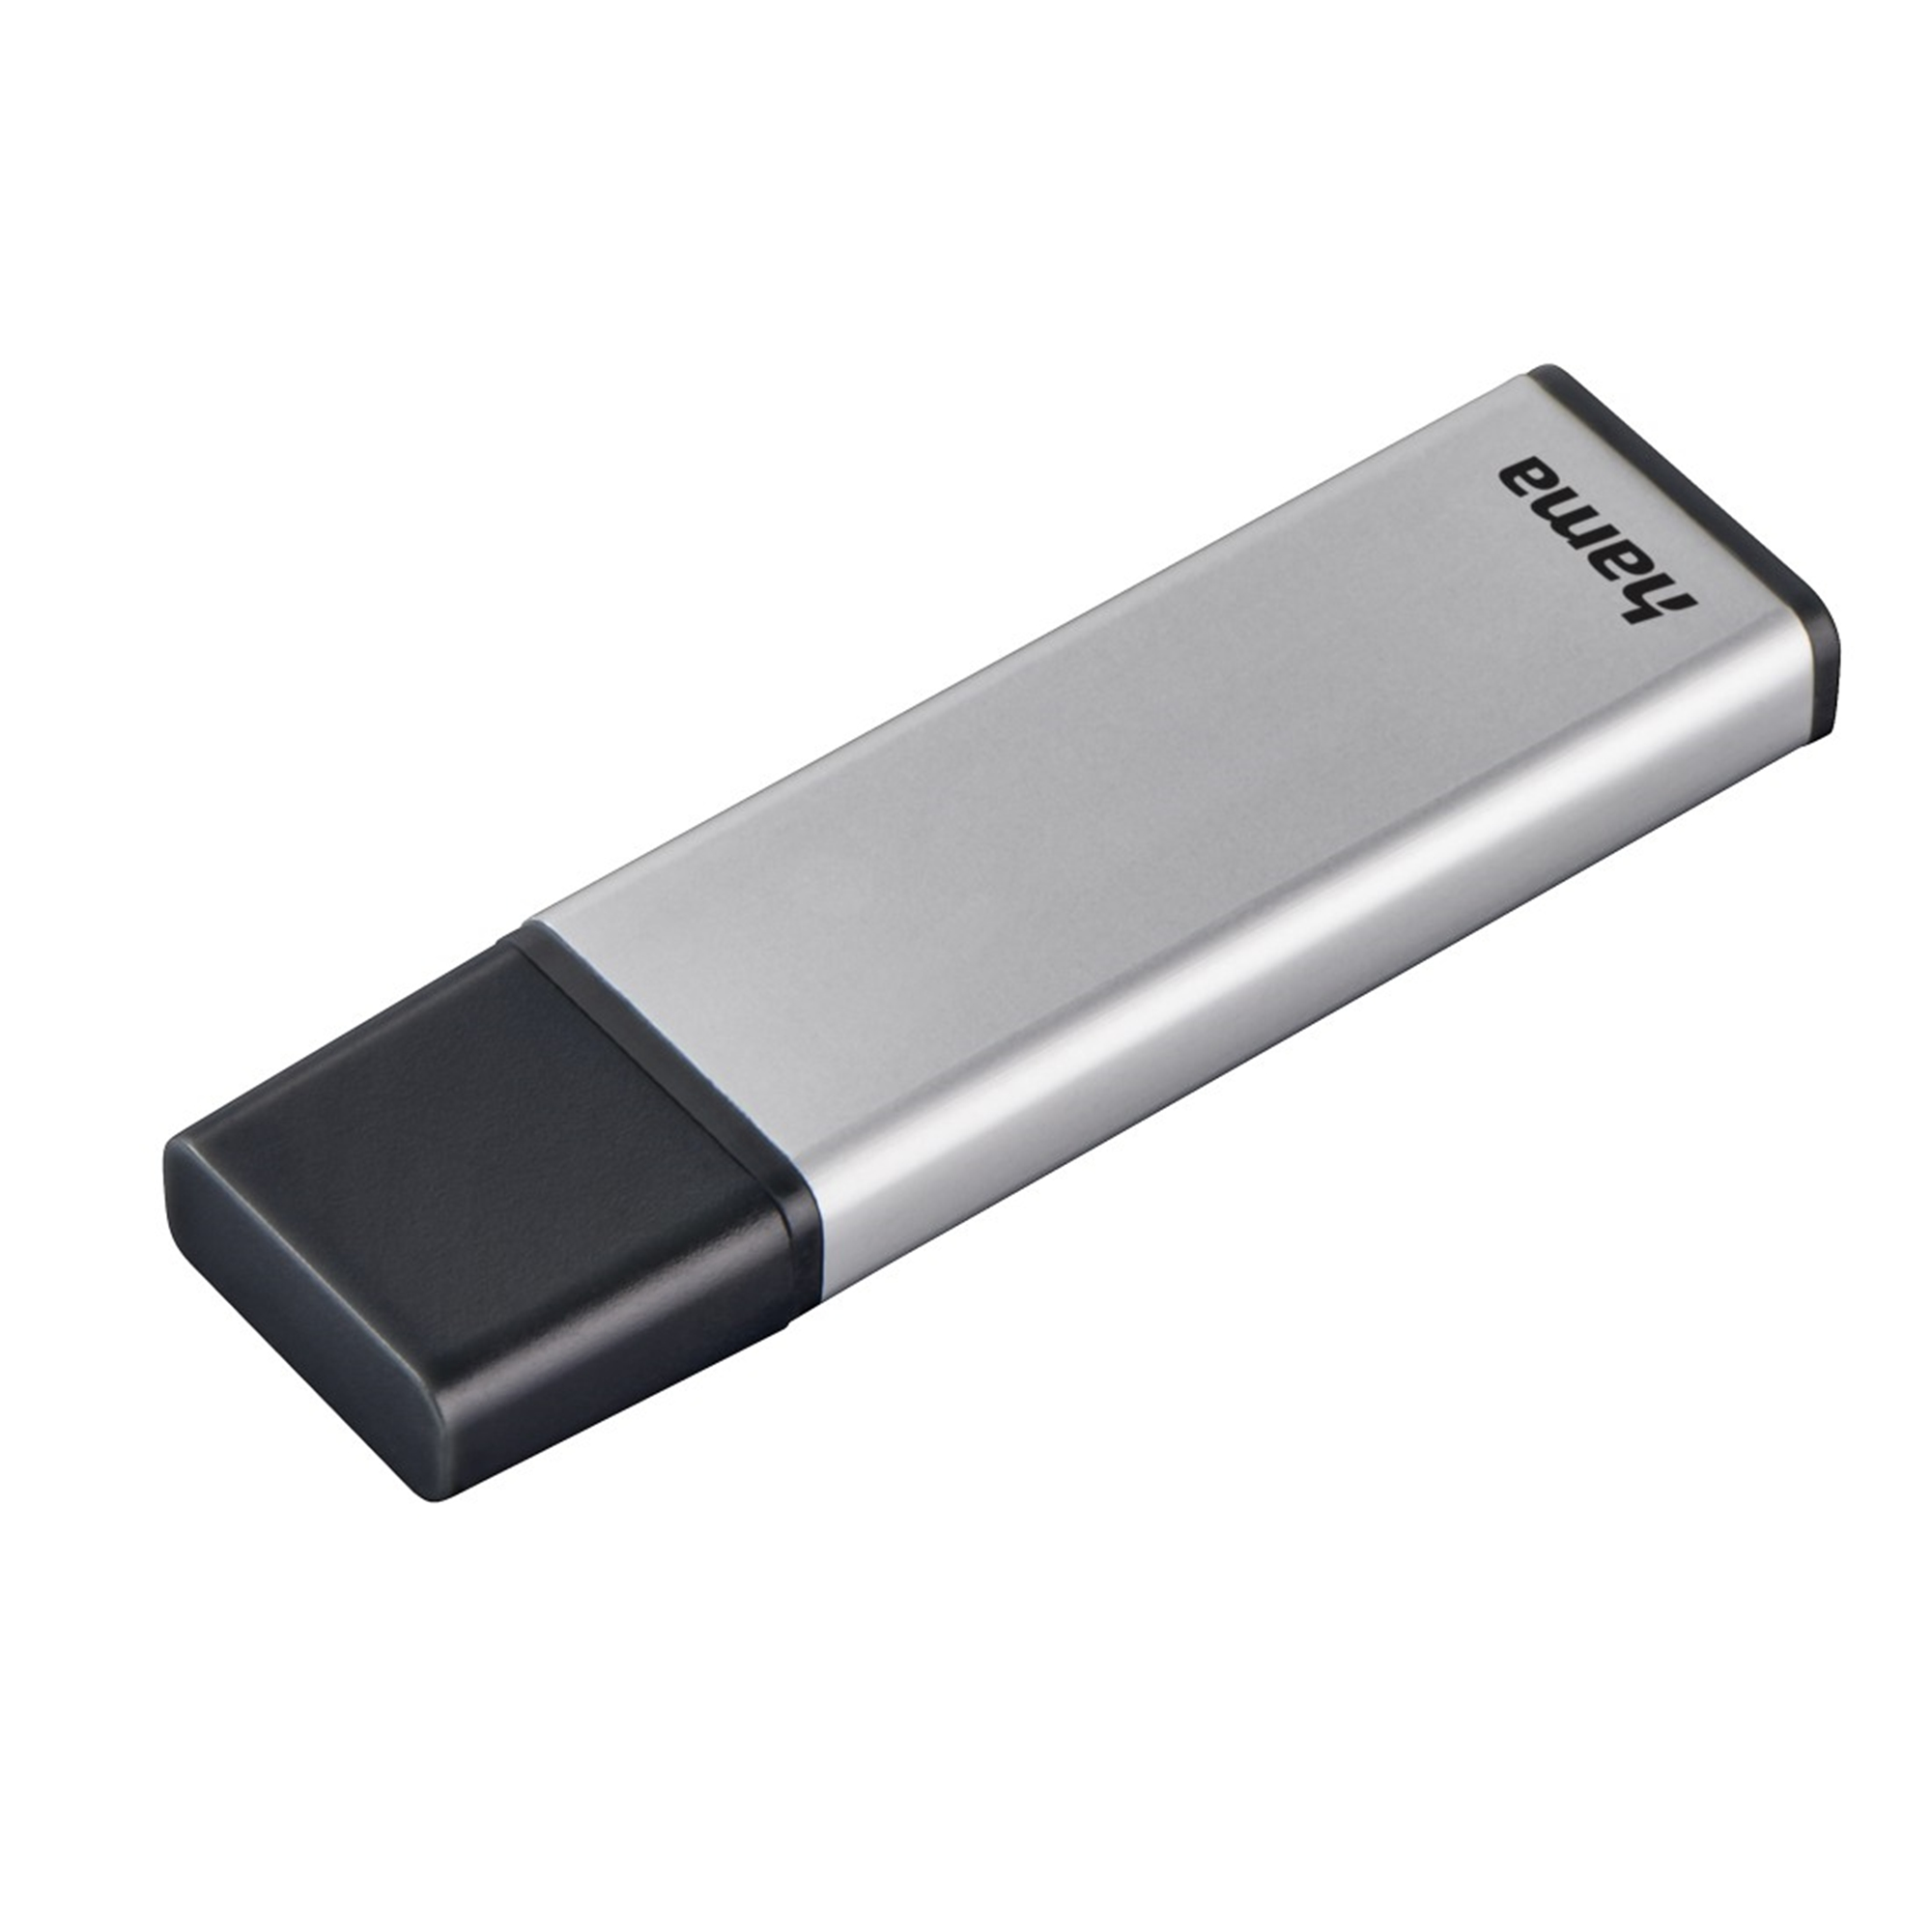 Classic GB) 16 (Silber, HAMA GB USB-Stick 16